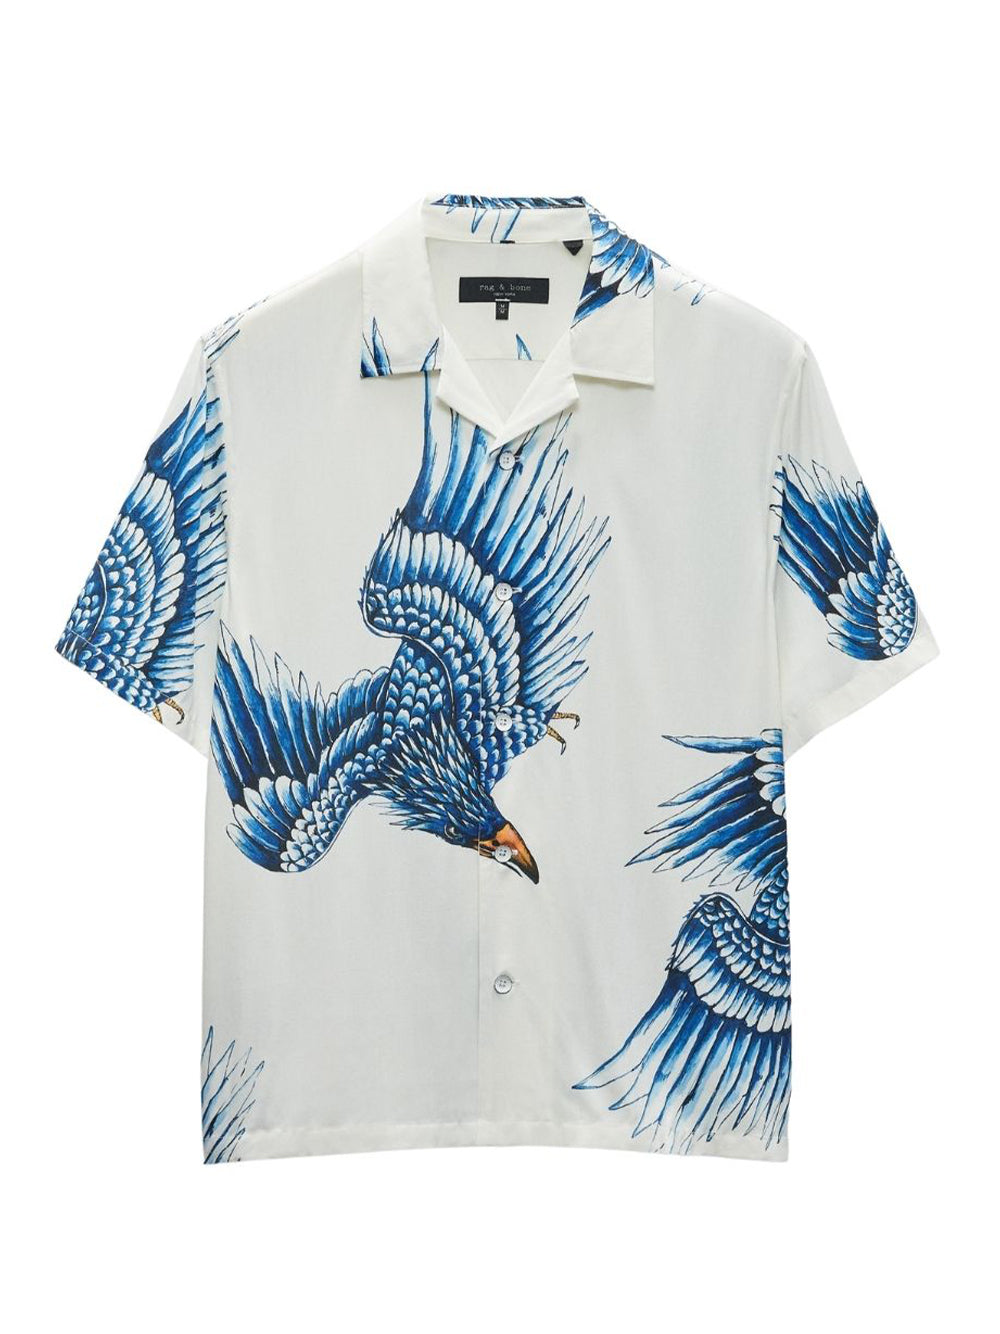 Printed Avery Shirt (Ecru Eagle)